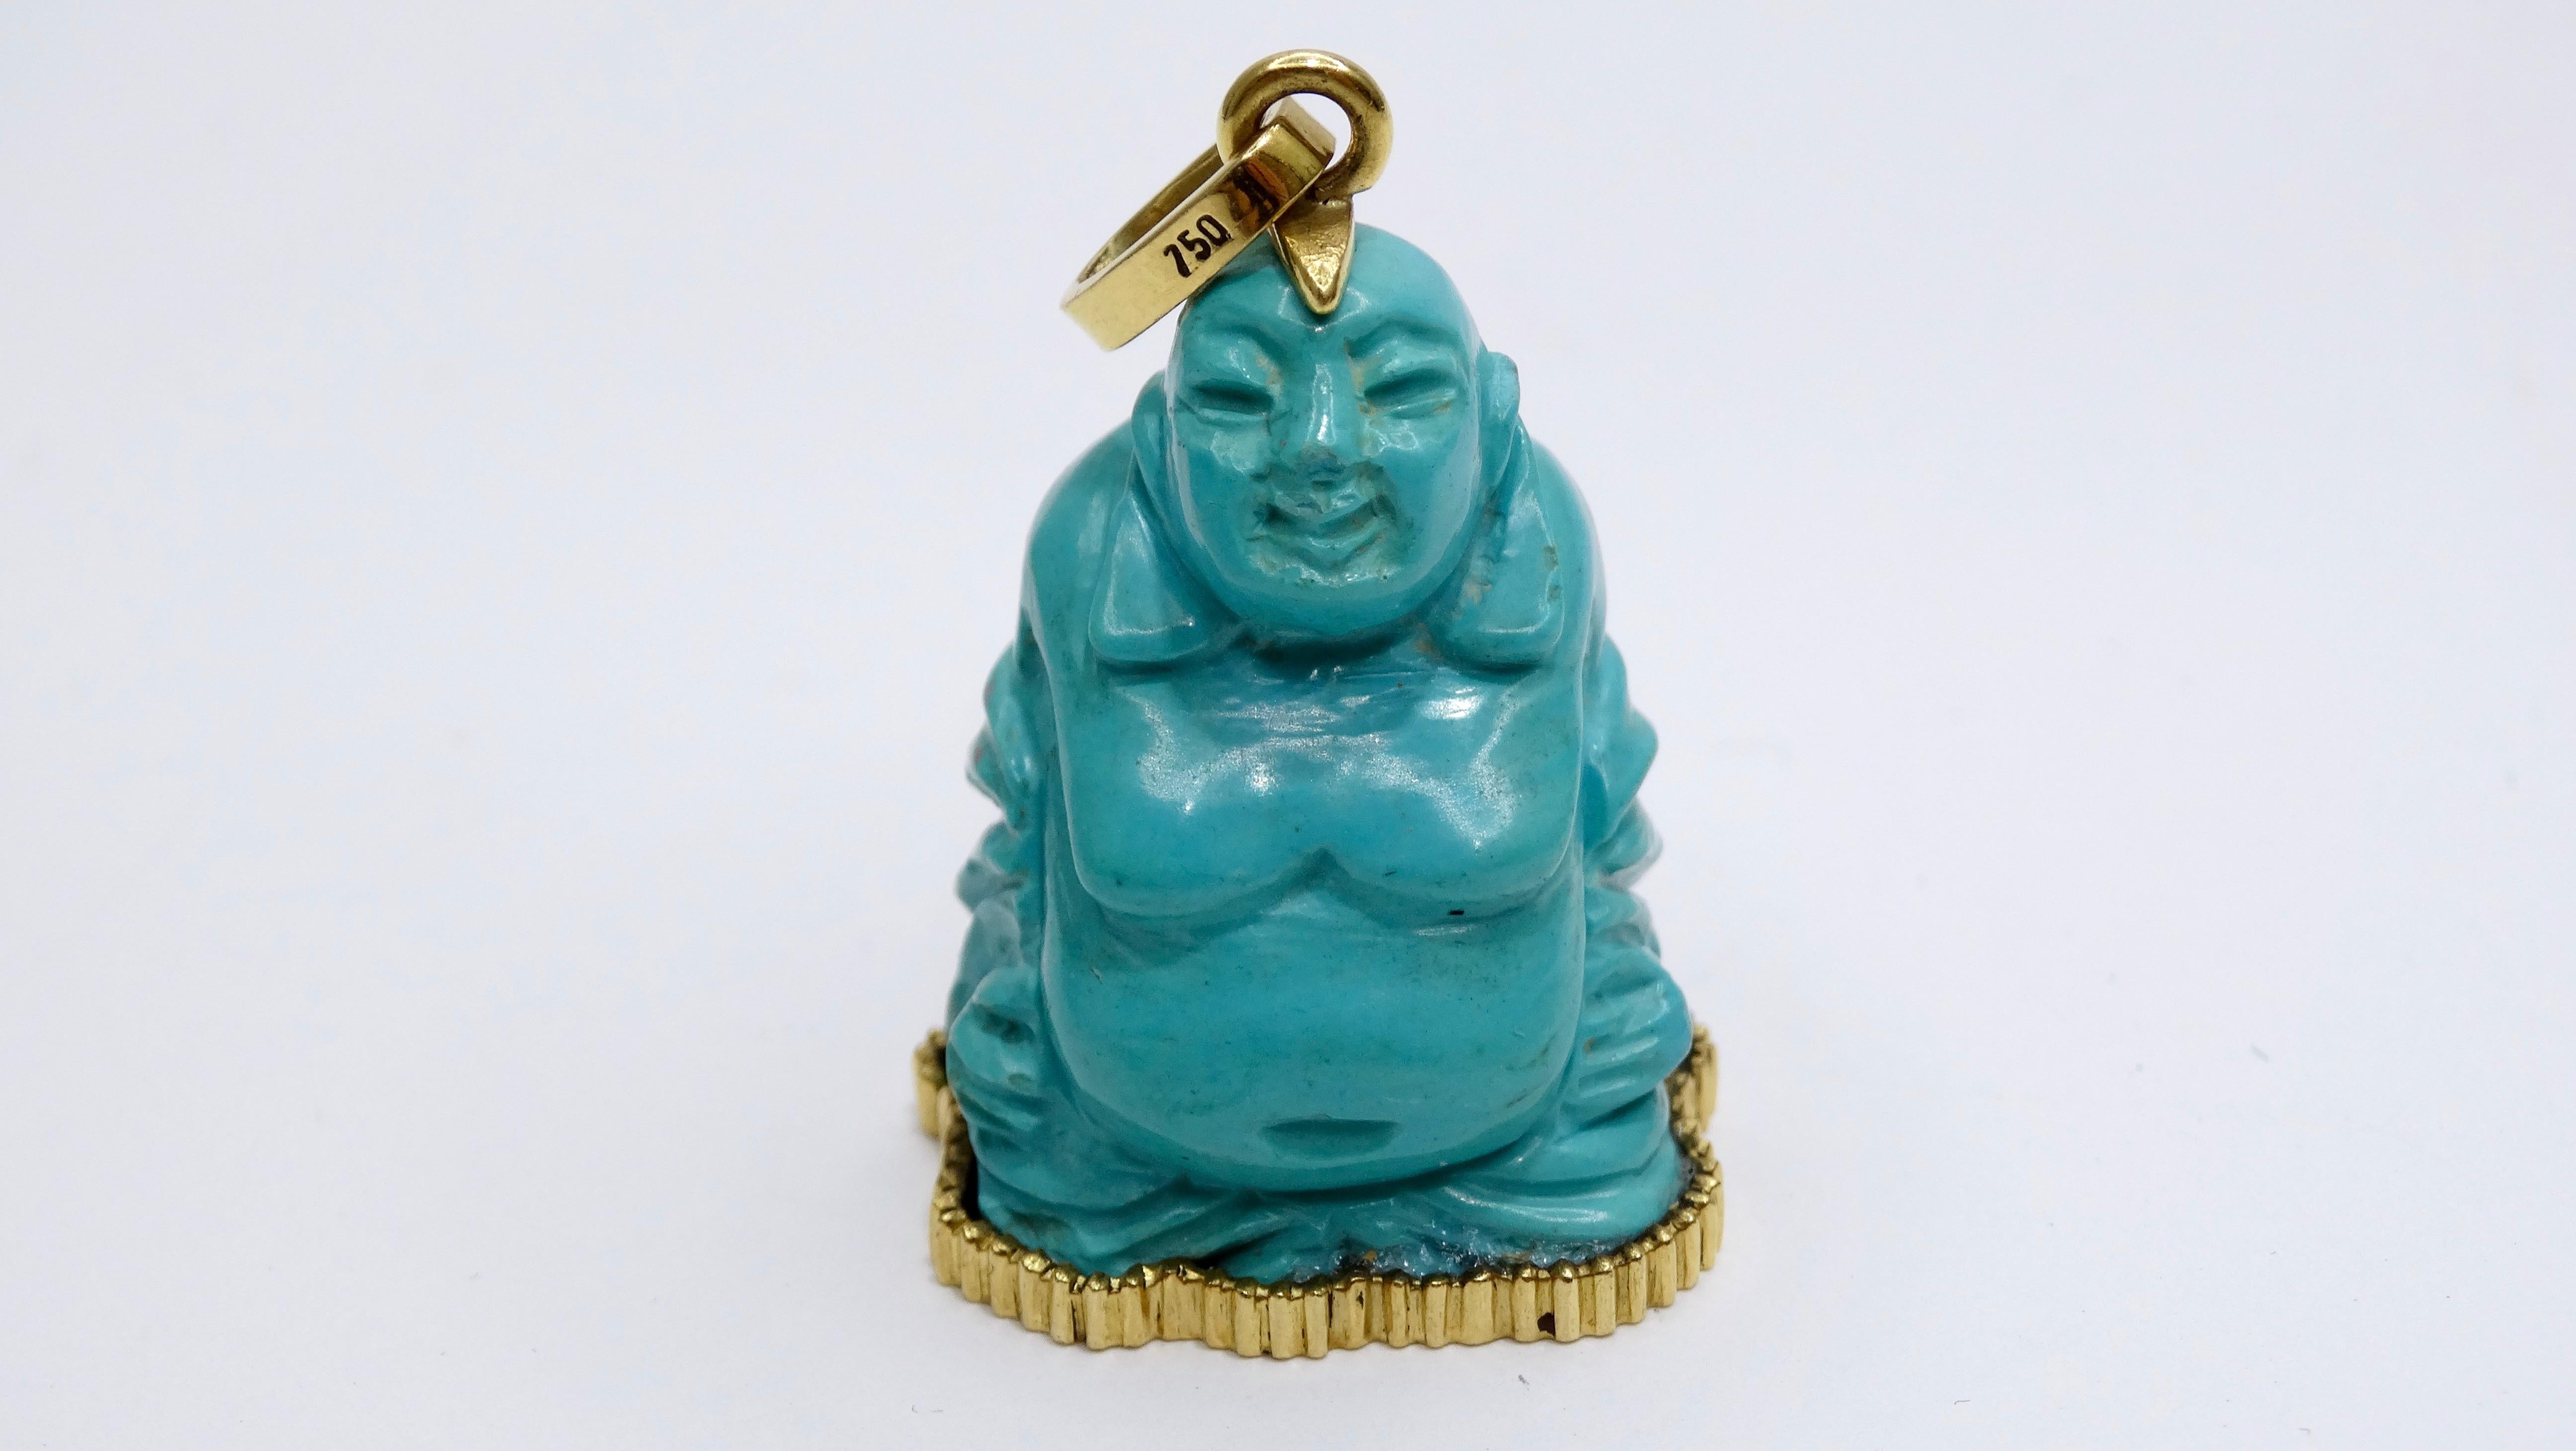 Ce grand pendentif Budda vintage en turquoise de la Belle au bois dormant est magnifique et digne d'être collectionné. Si vous aimez le style bohème et éclectique, ajoutez un pendentif magnifiquement travaillé à votre chaîne préférée et rehaussez